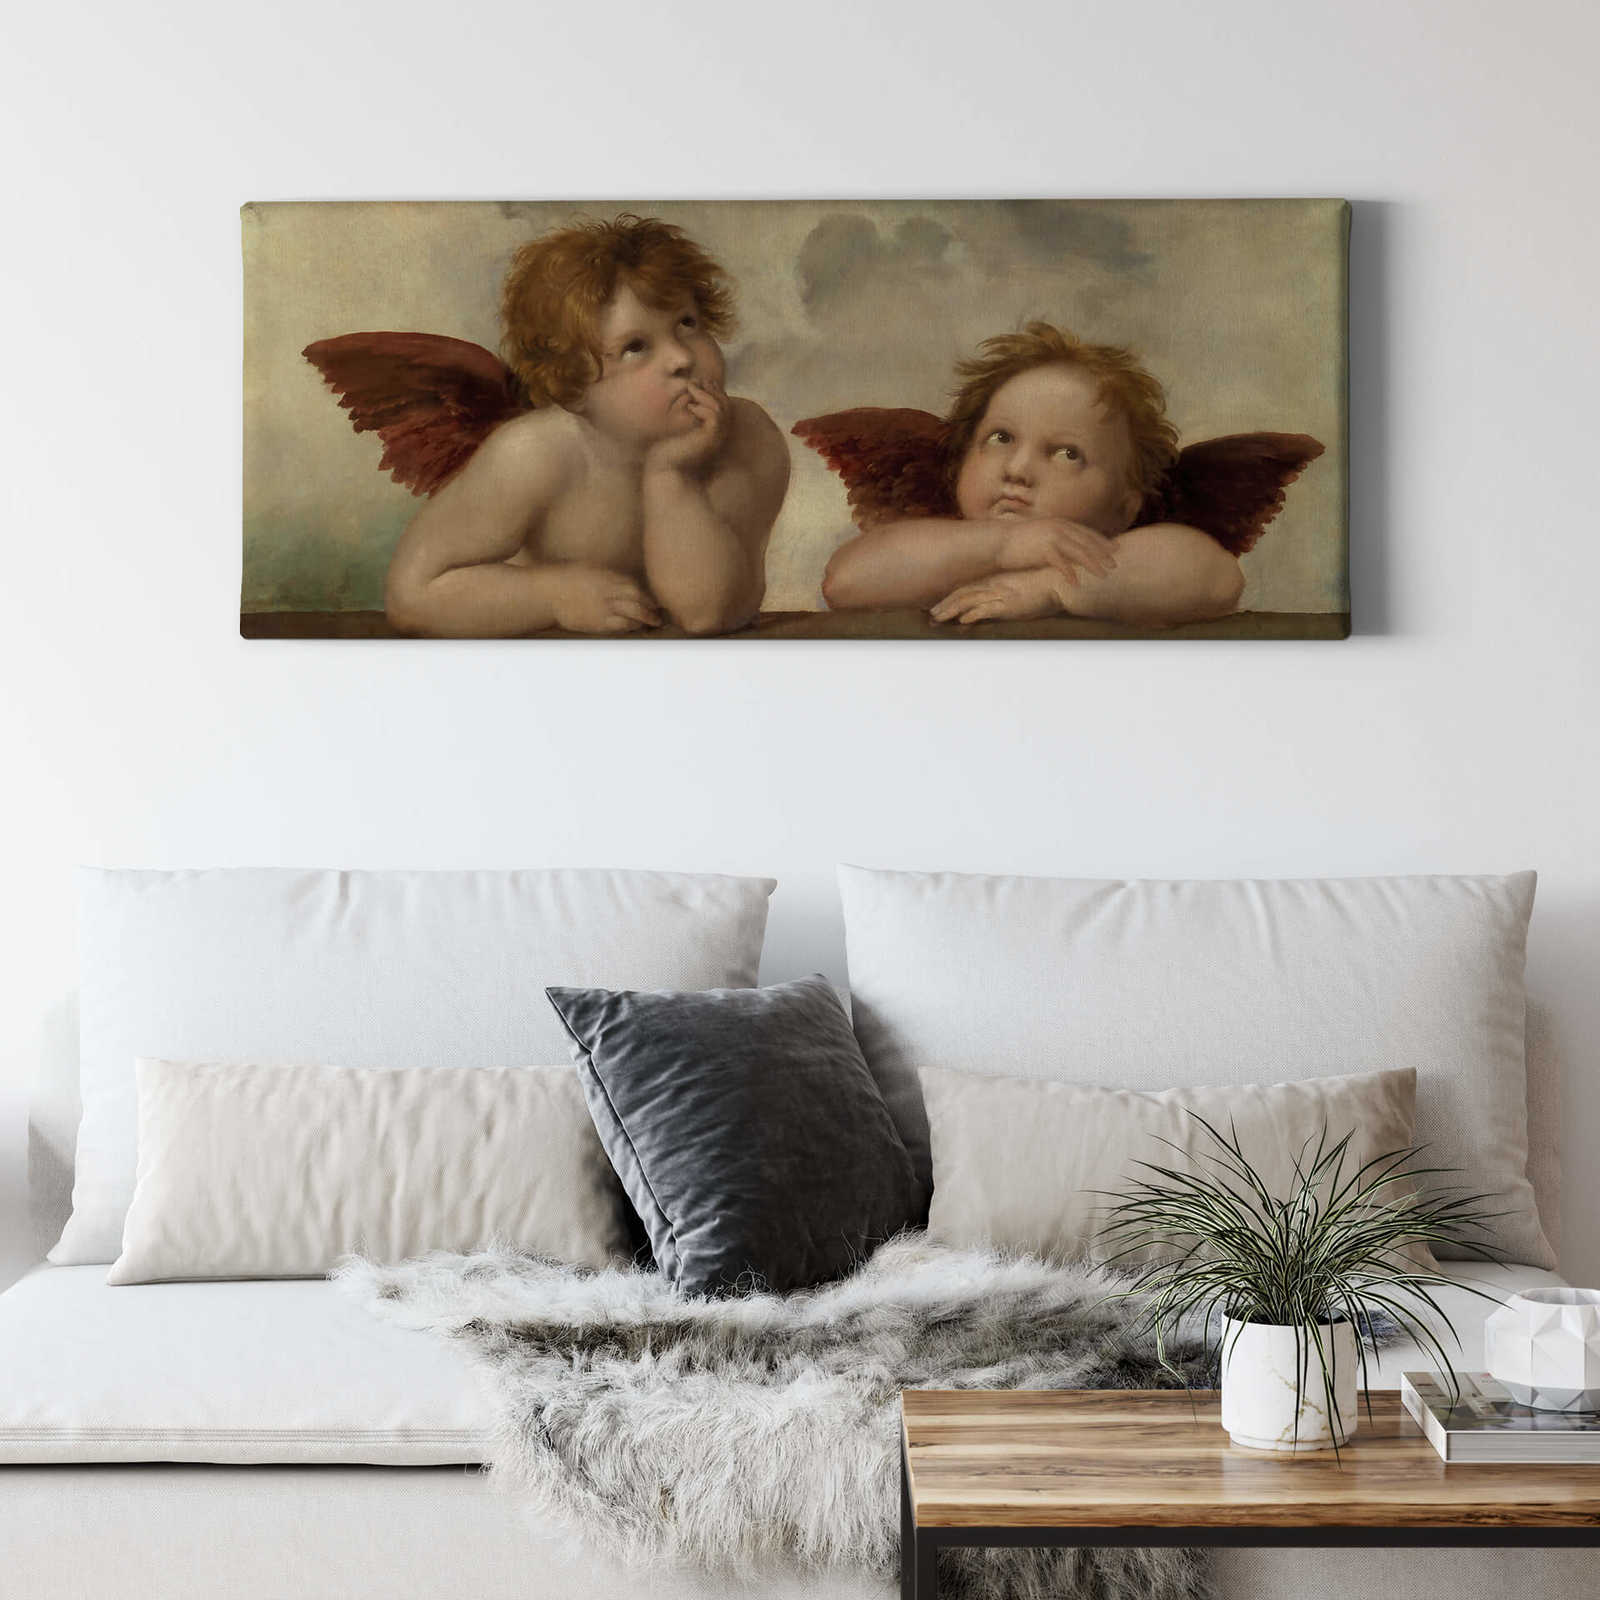             Panorama Canvas schilderij twee engelen door Rafaël - 1,00 m x 0,40 m
        